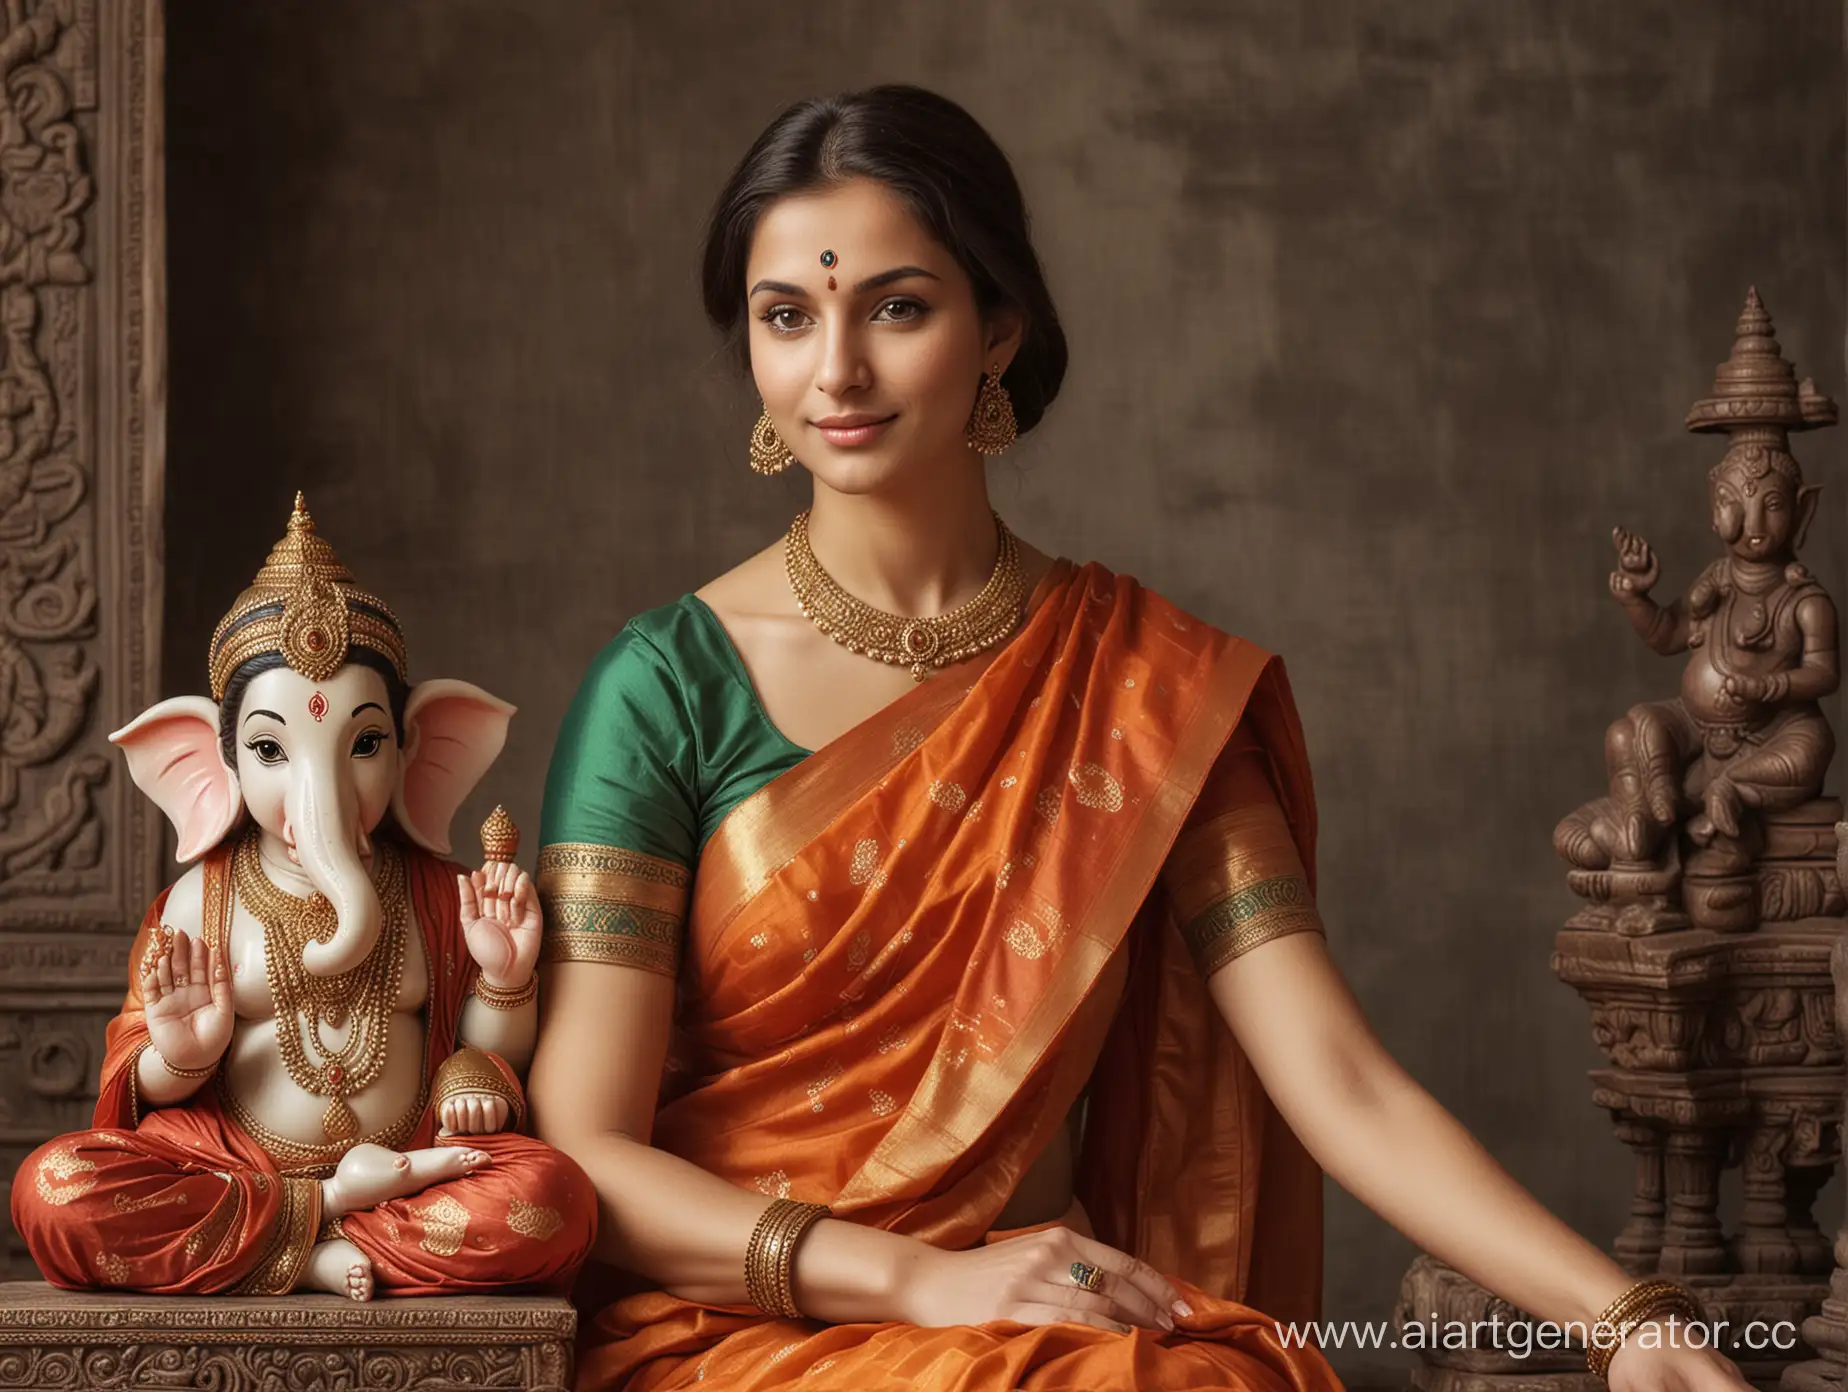 European-Woman-in-Sari-Sitting-with-TwoArmed-Lord-Ganesha